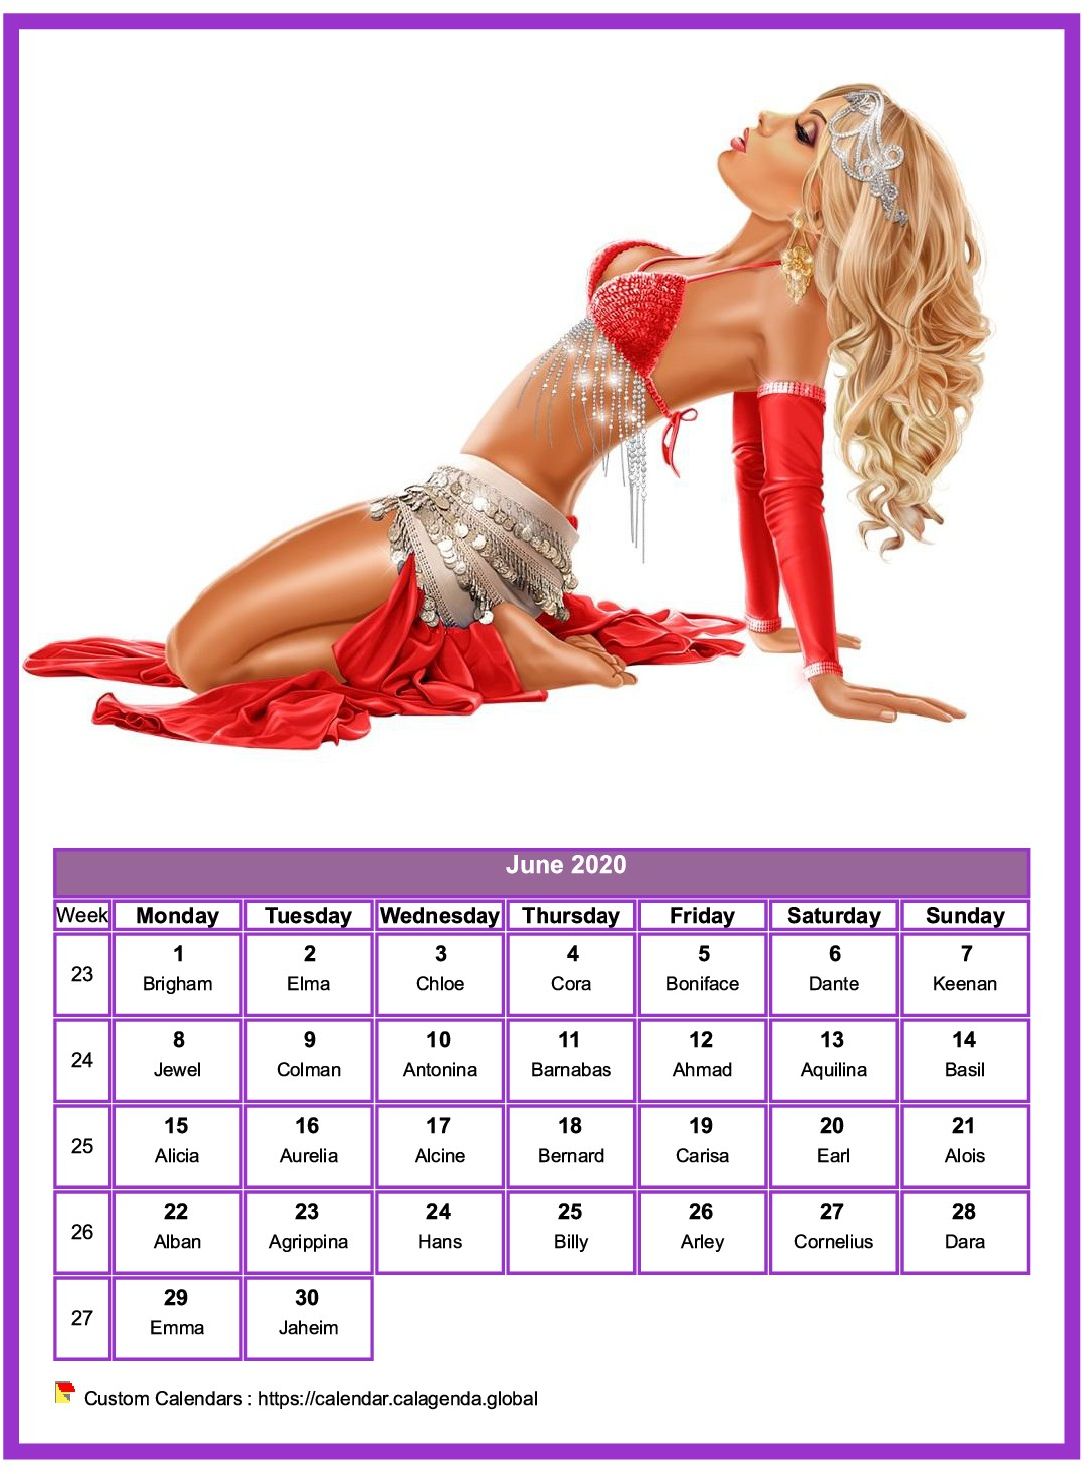 Calendar June 2020 women